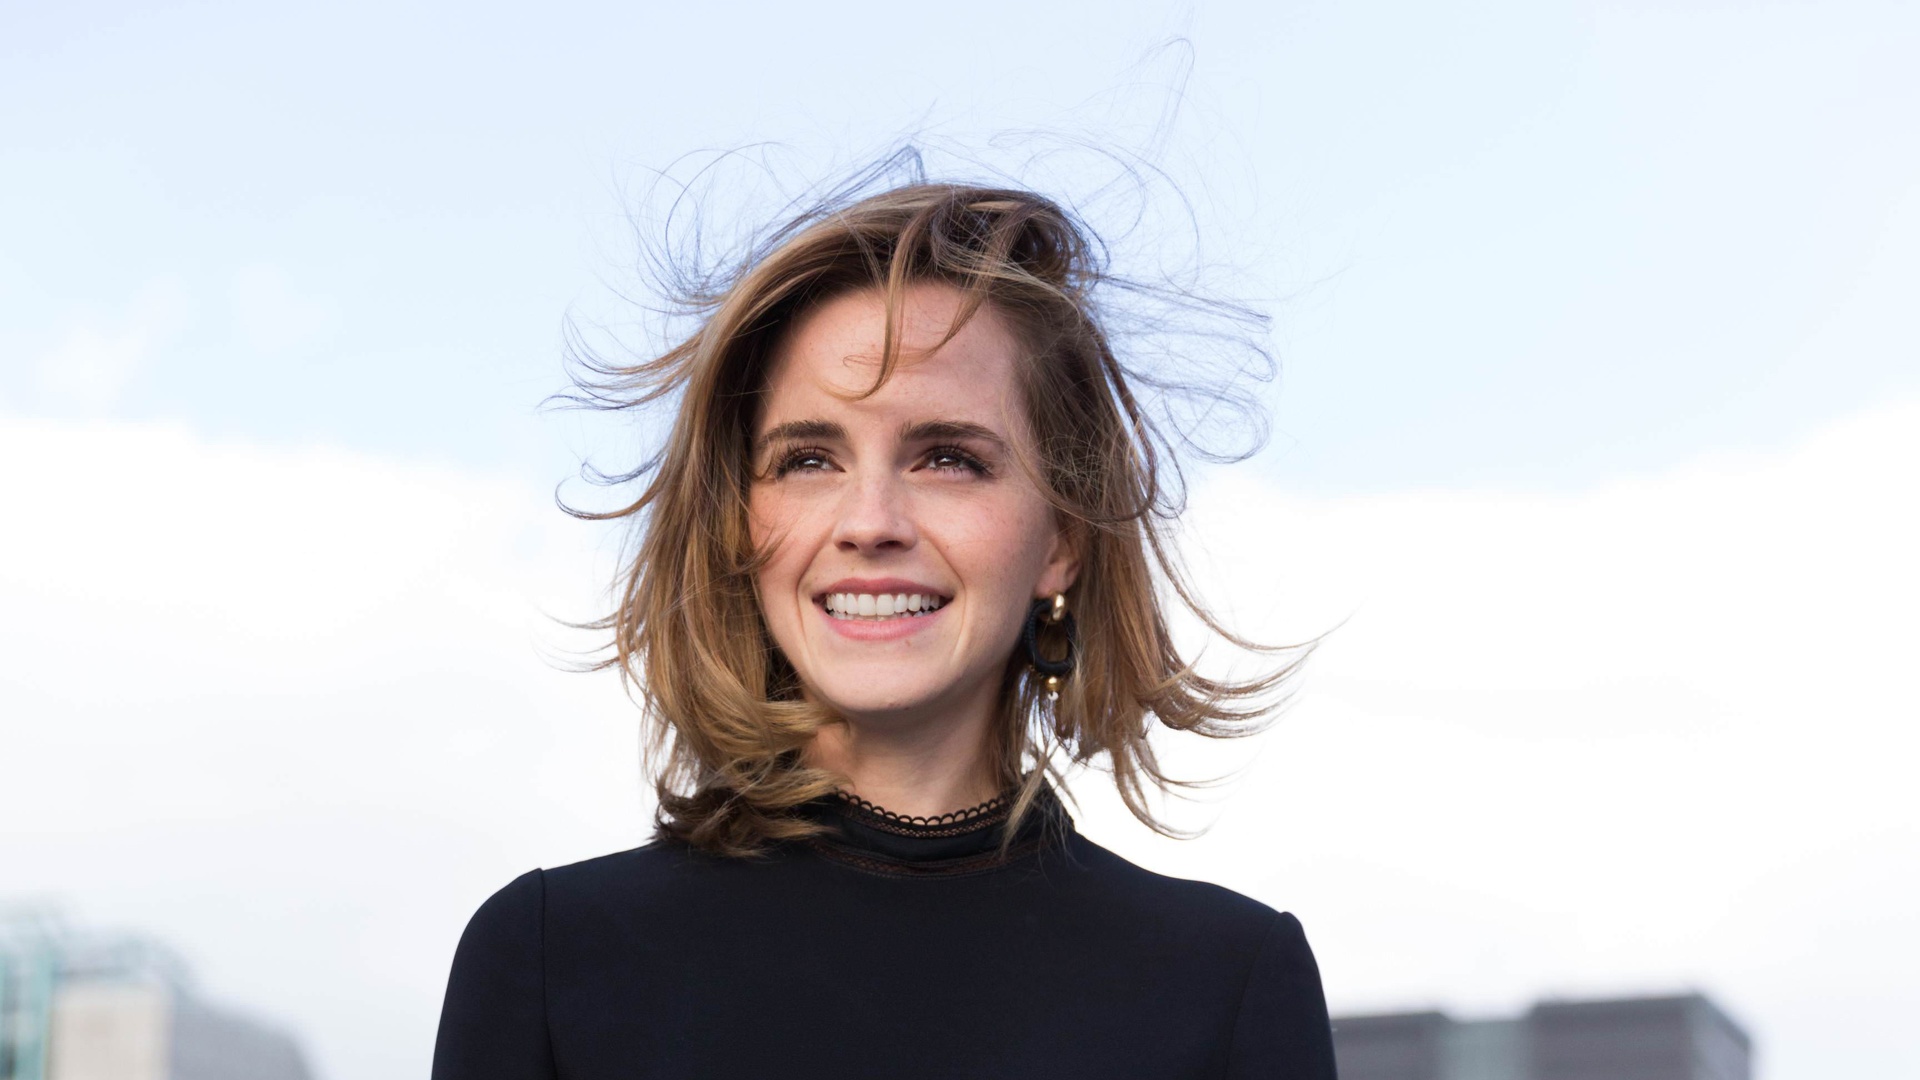 Emma Watson - wallpaper 4K.jpg